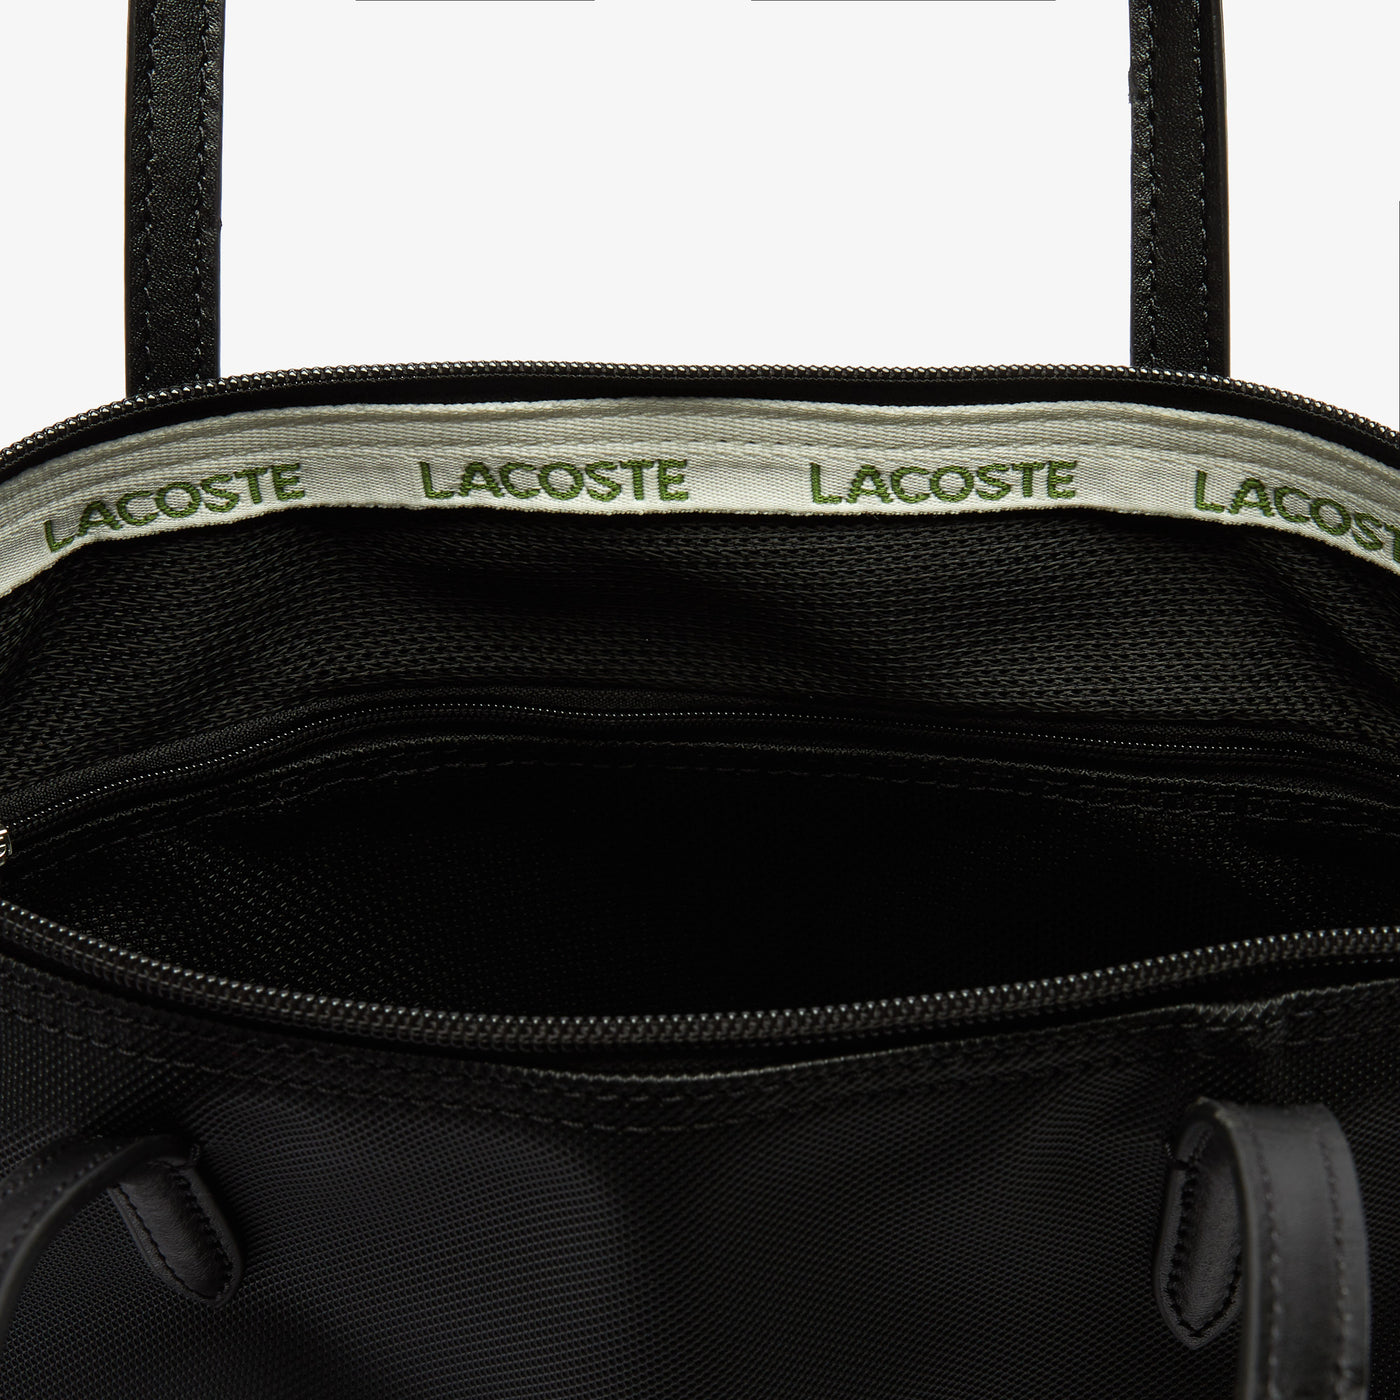 Women's L.12.12 Concept Small Zip Tote Bag - NF2037PO